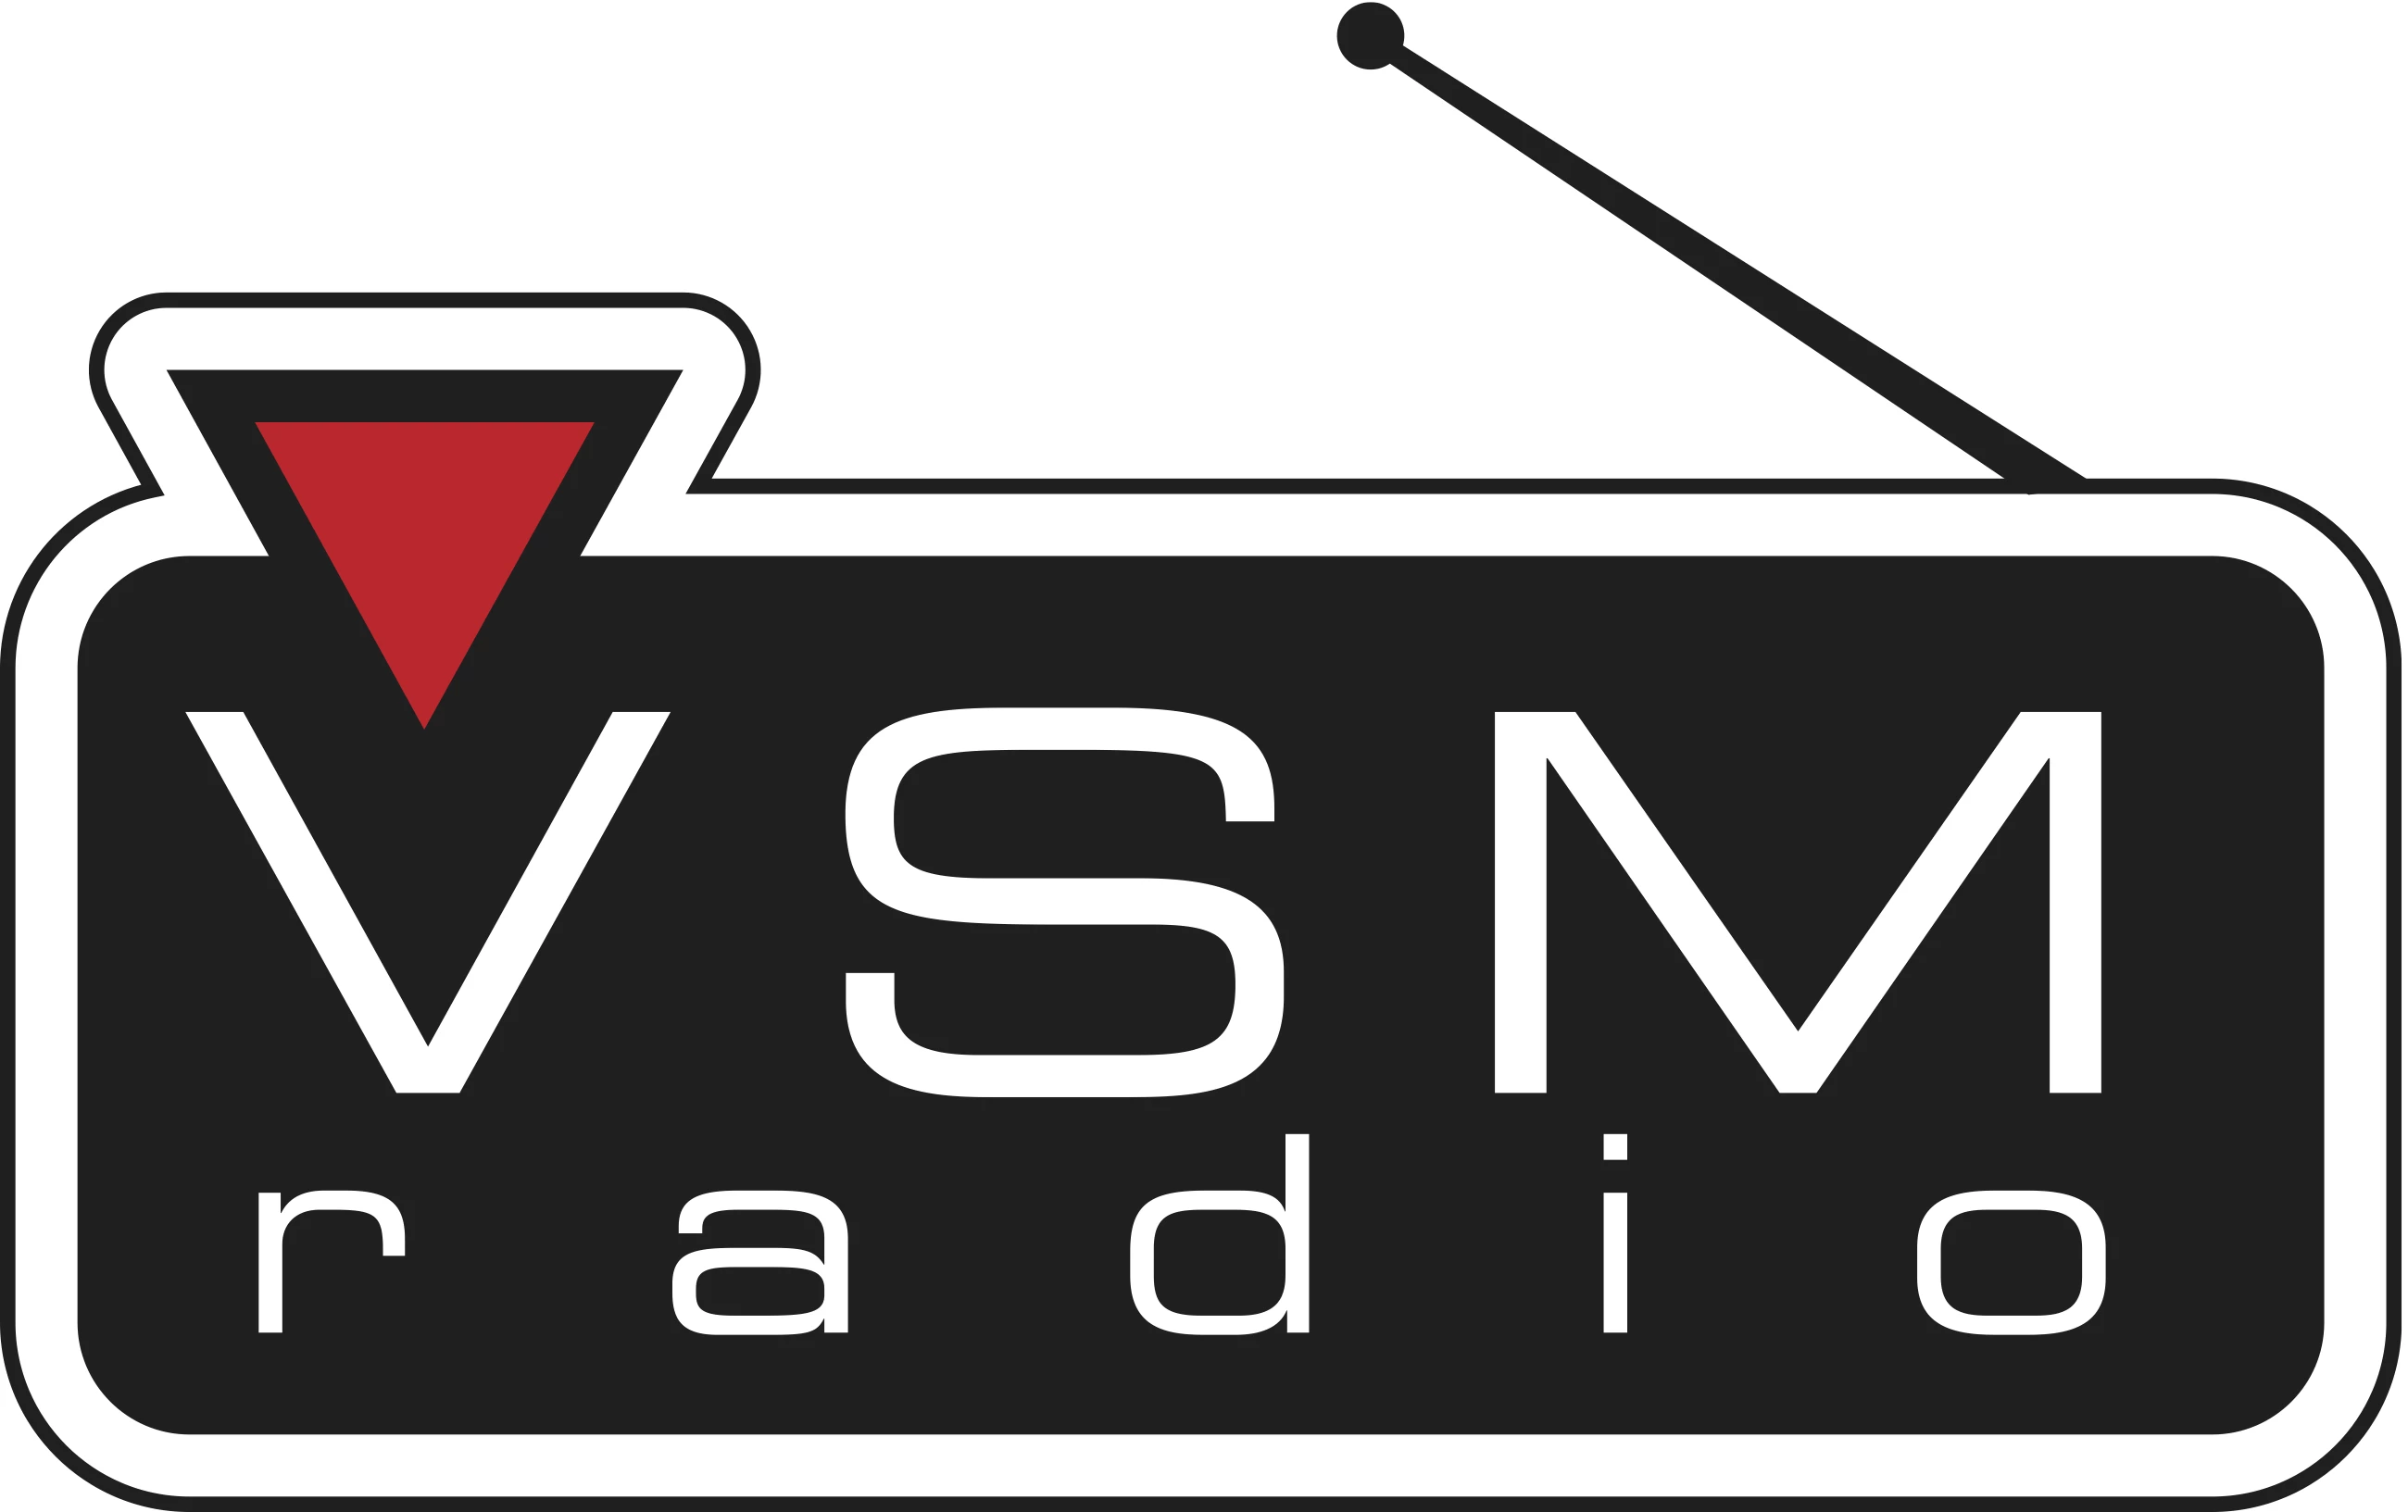 VSM Radio